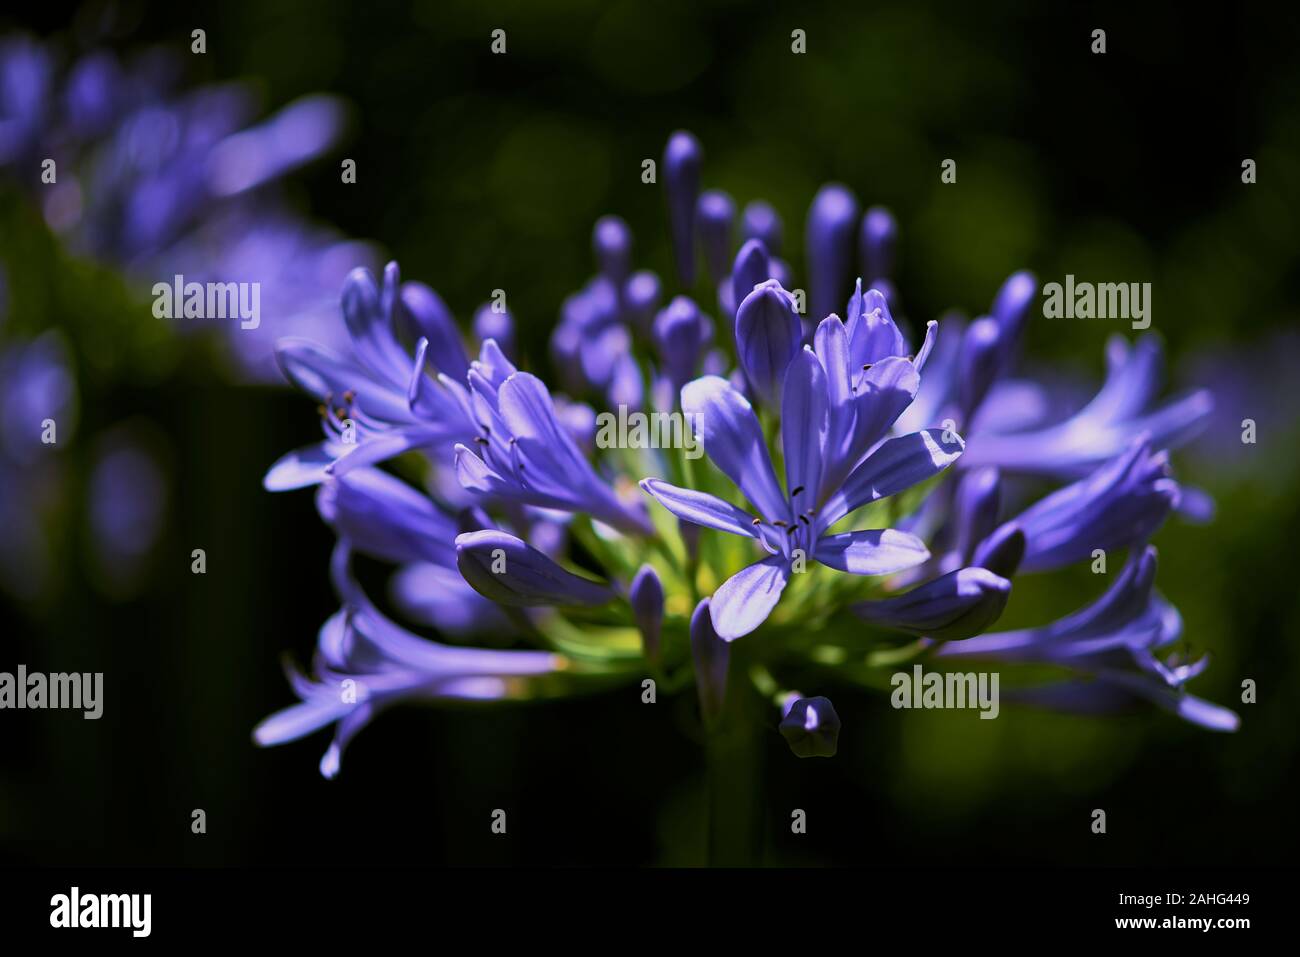 Blühende blaue Agapanthus, Schmucklilie (Agapanthus africanus), oder die Lilie auf dem Nil. Blaue Lilie Blume Hintergrund. Stockfoto